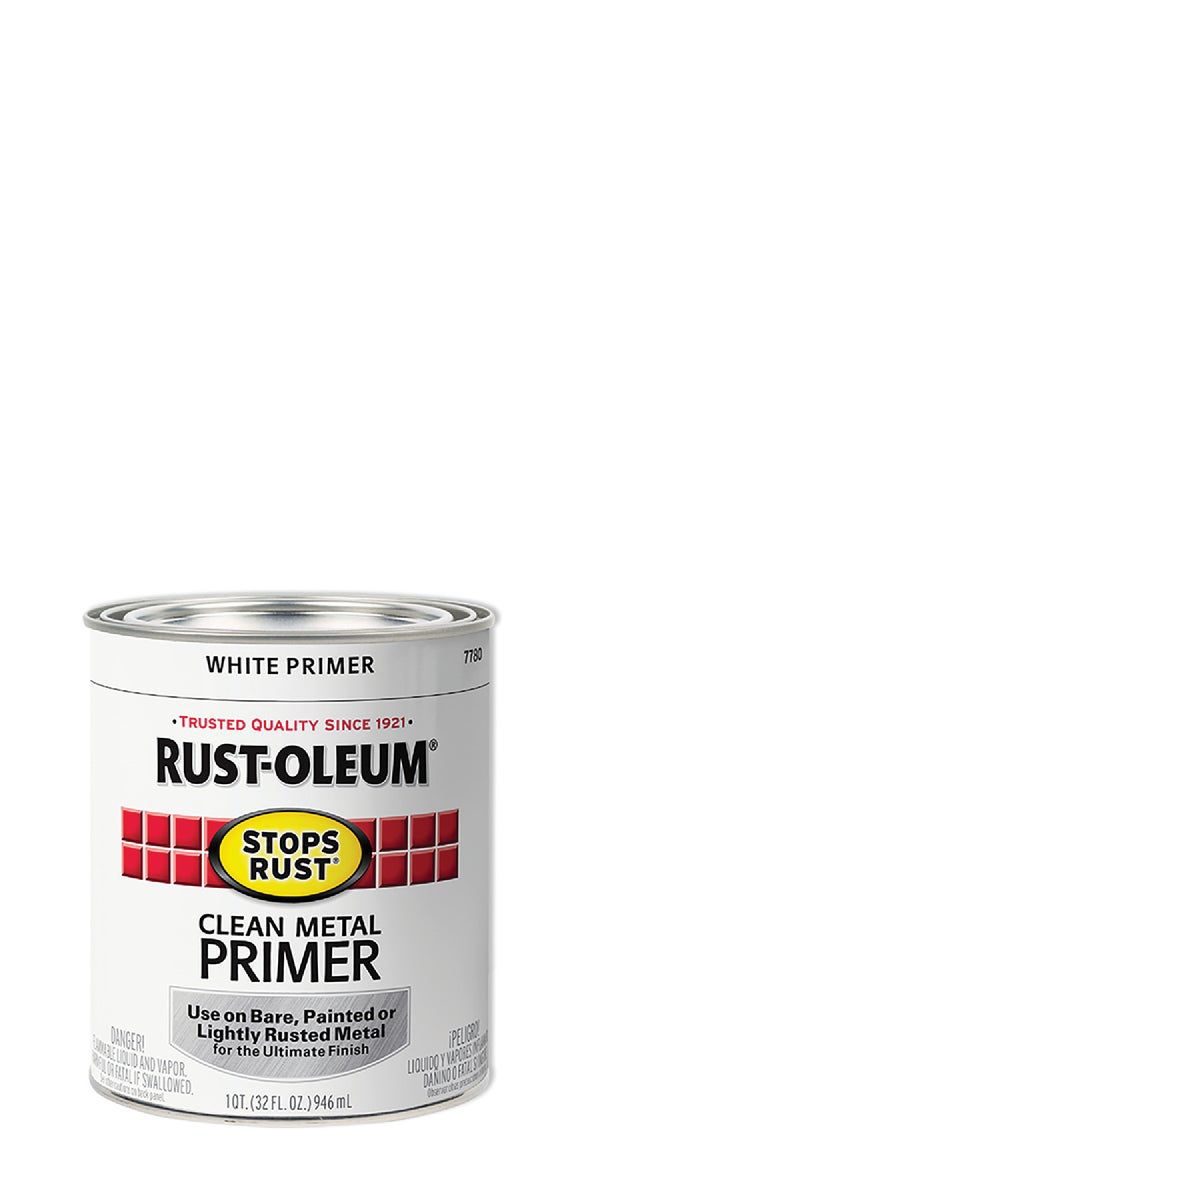 Use of Rustoleum Primer+Paint Combo in Metal Art